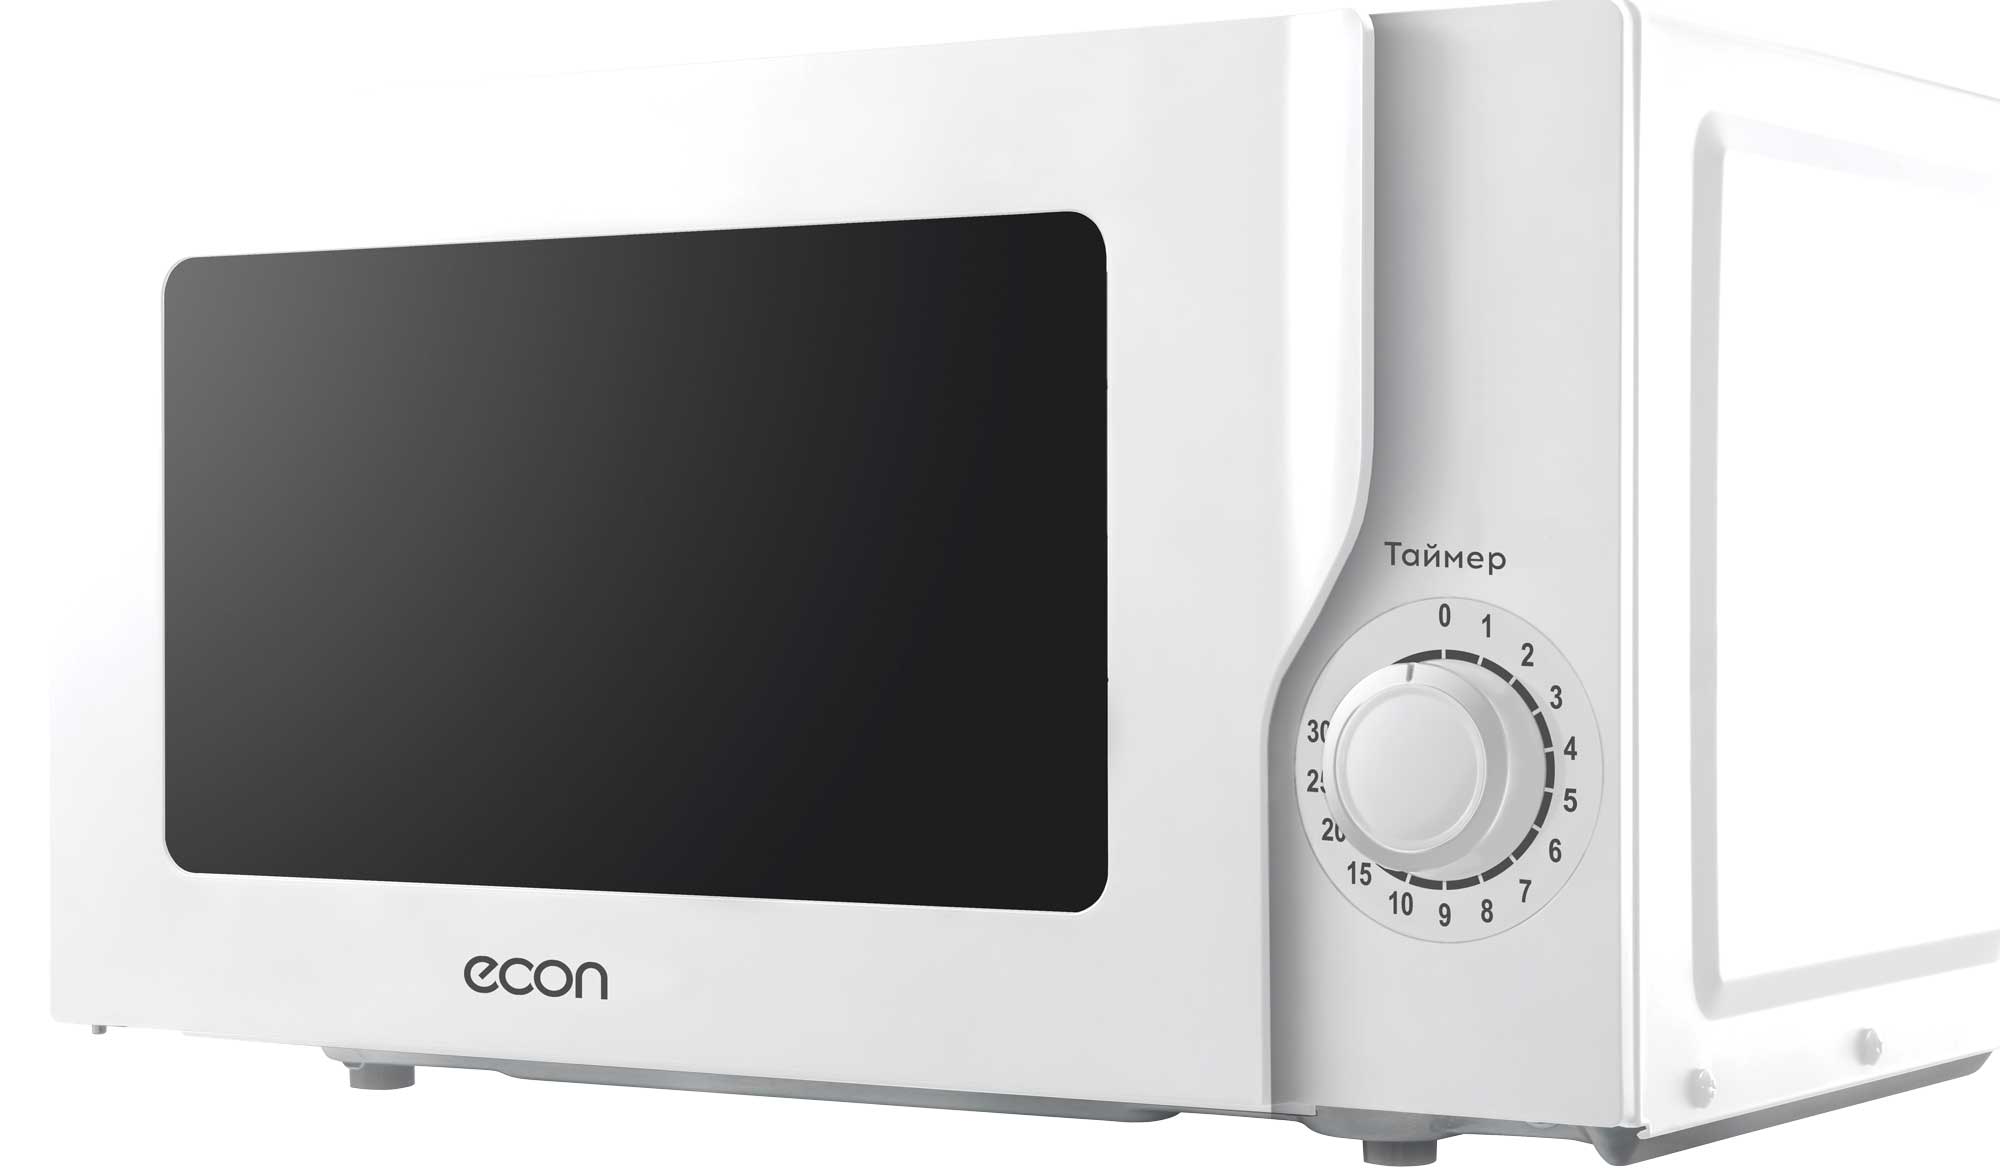 Картинка Микроволновая печь ECON ECO-2035M по разумной цене купить в интернет магазине mall.su